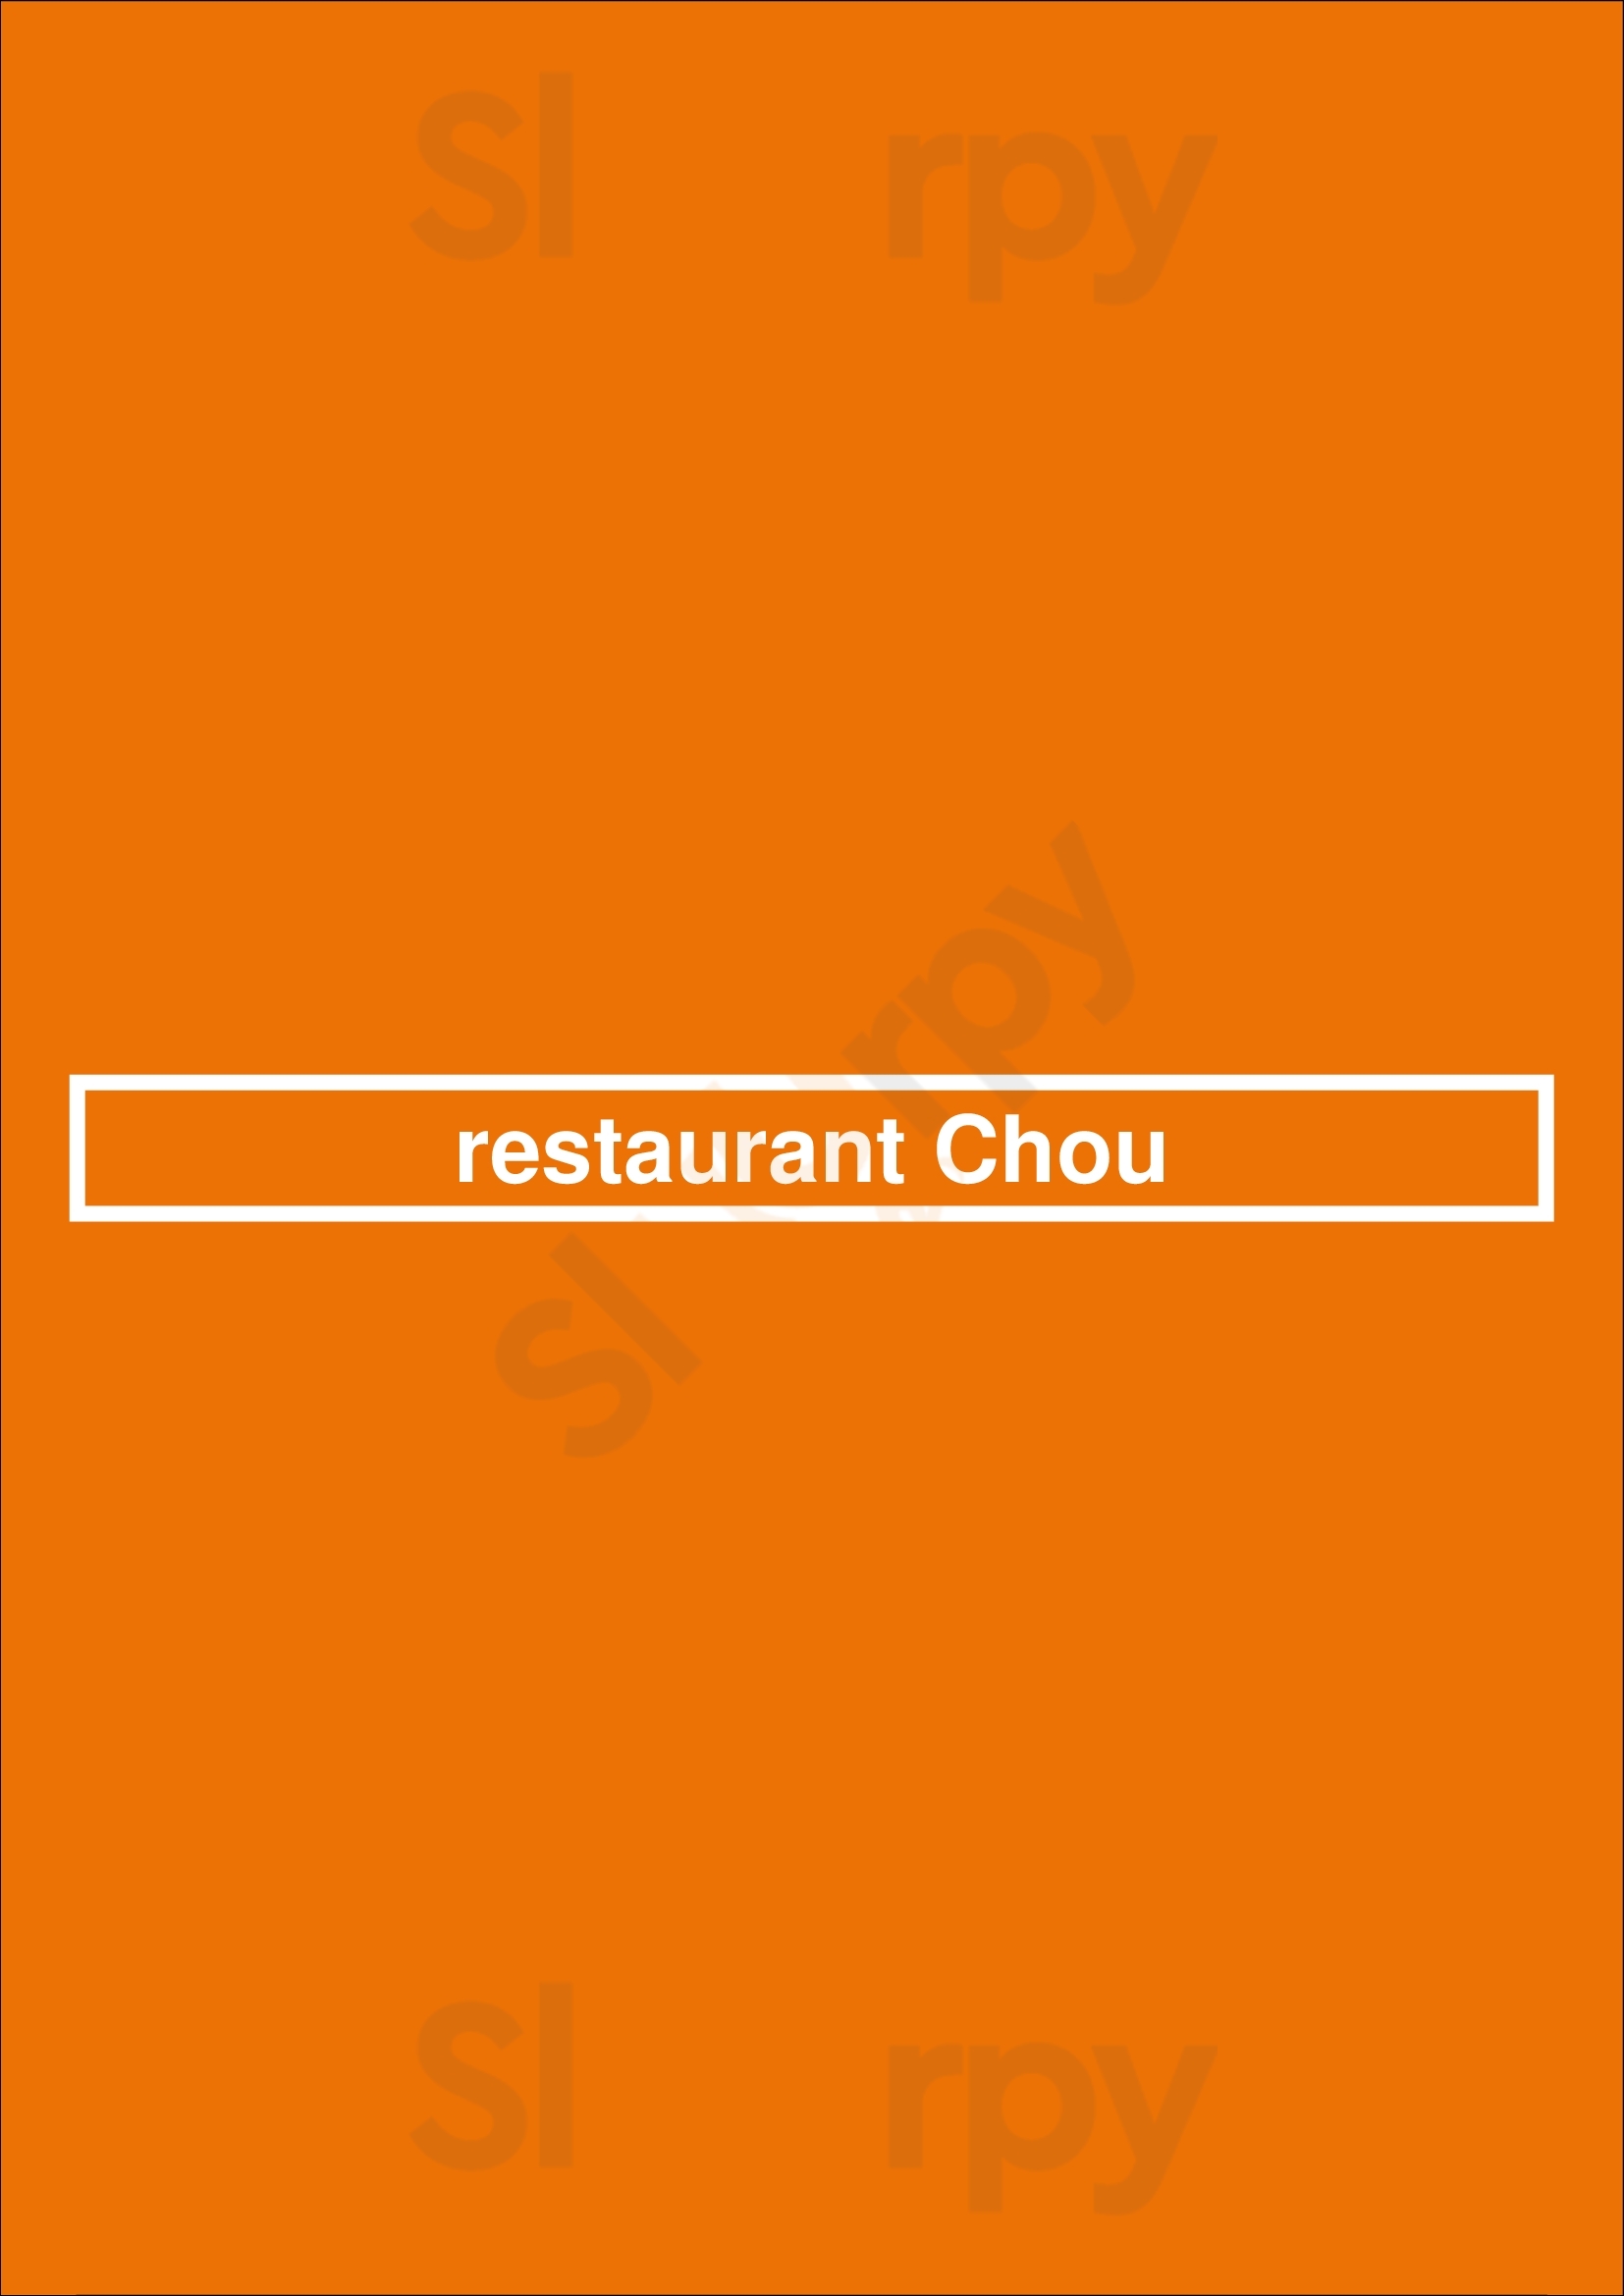 Restaurant Chou Bruxelles Menu - 1